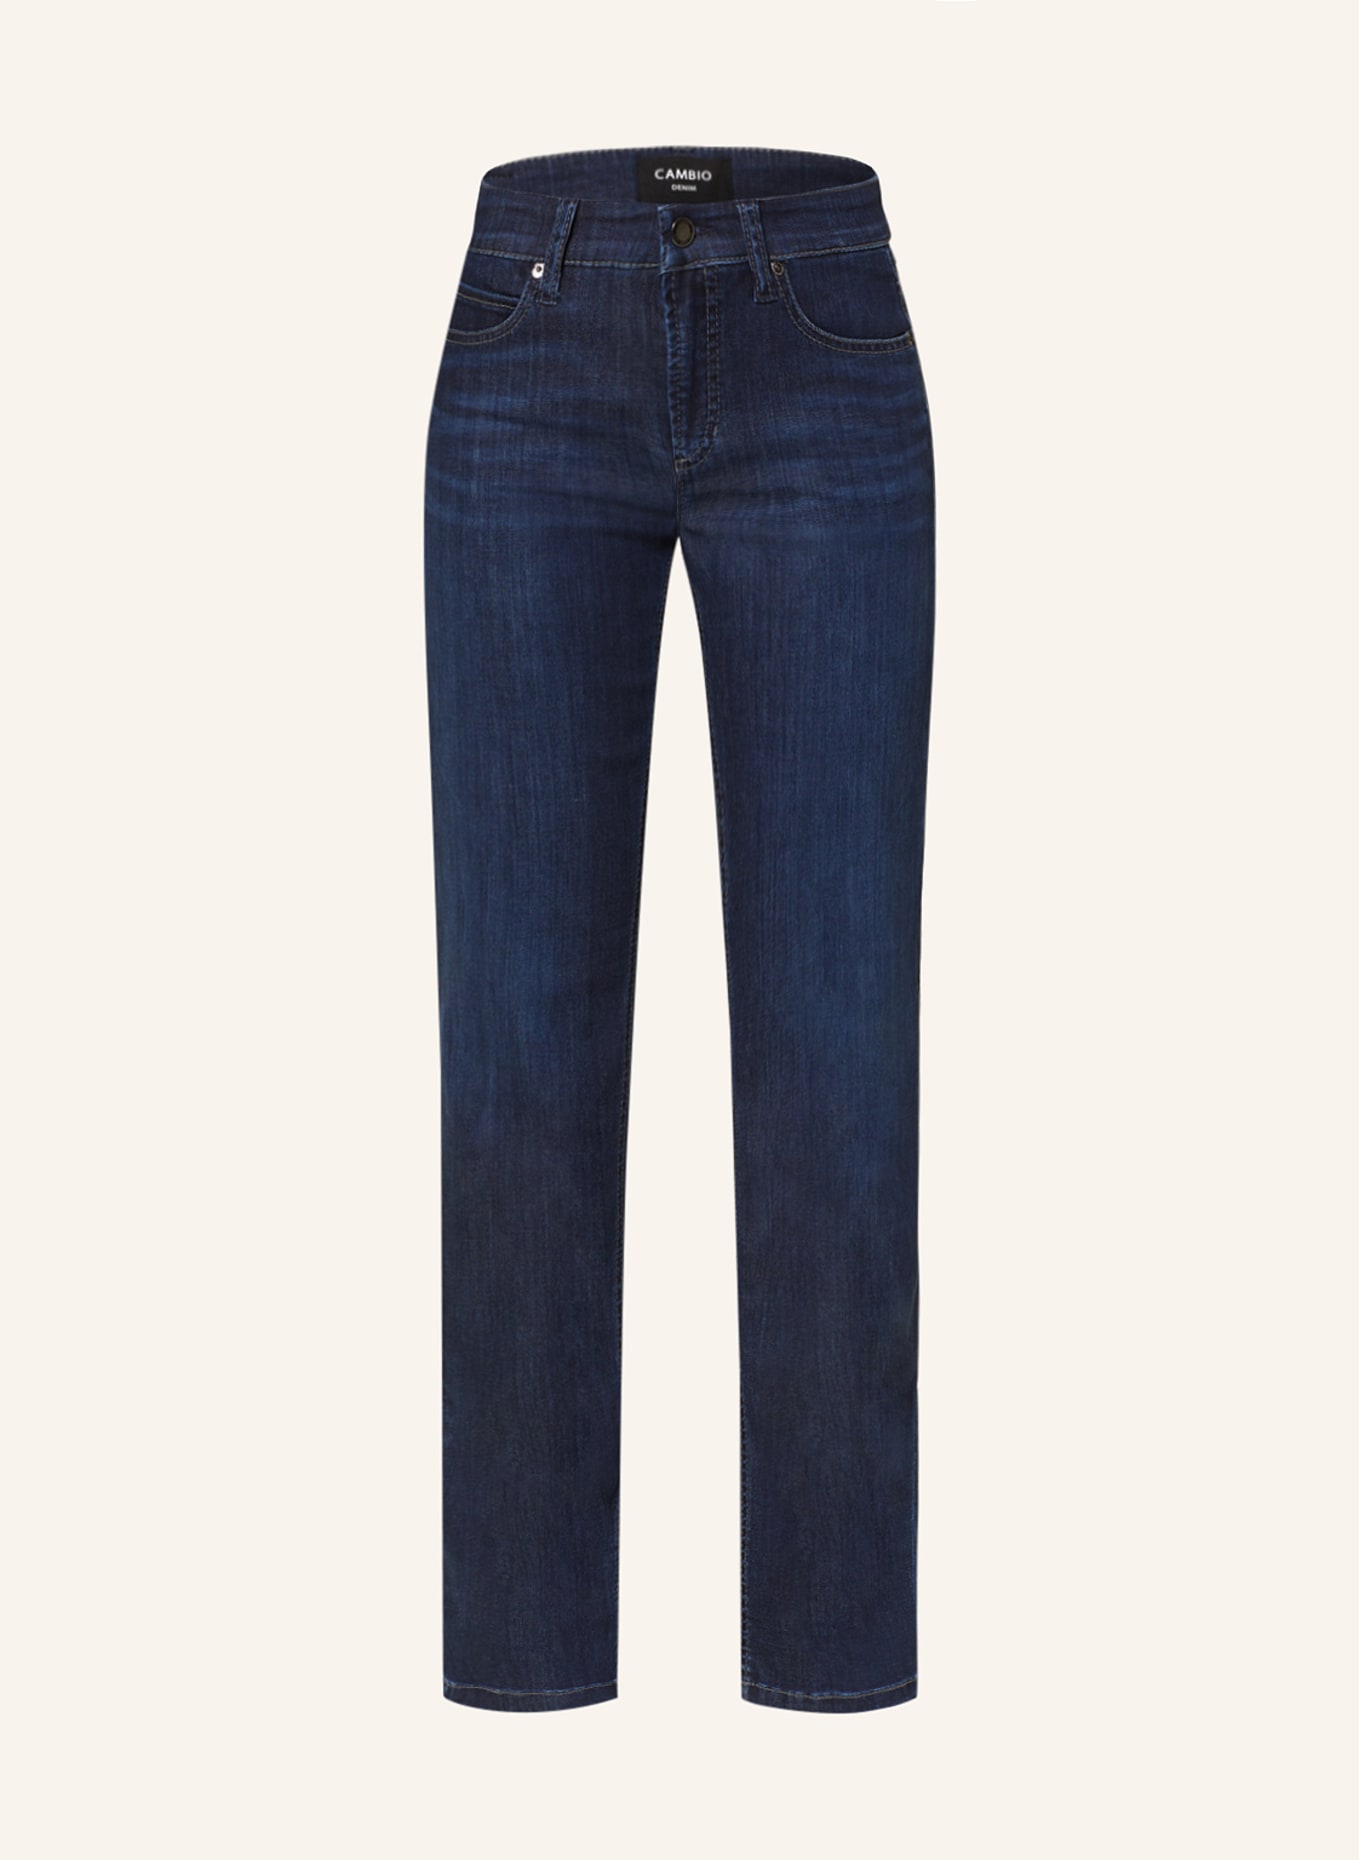 CAMBIO Straight jeans PARIS, Color: 5158 westcoast dark used (Image 1)